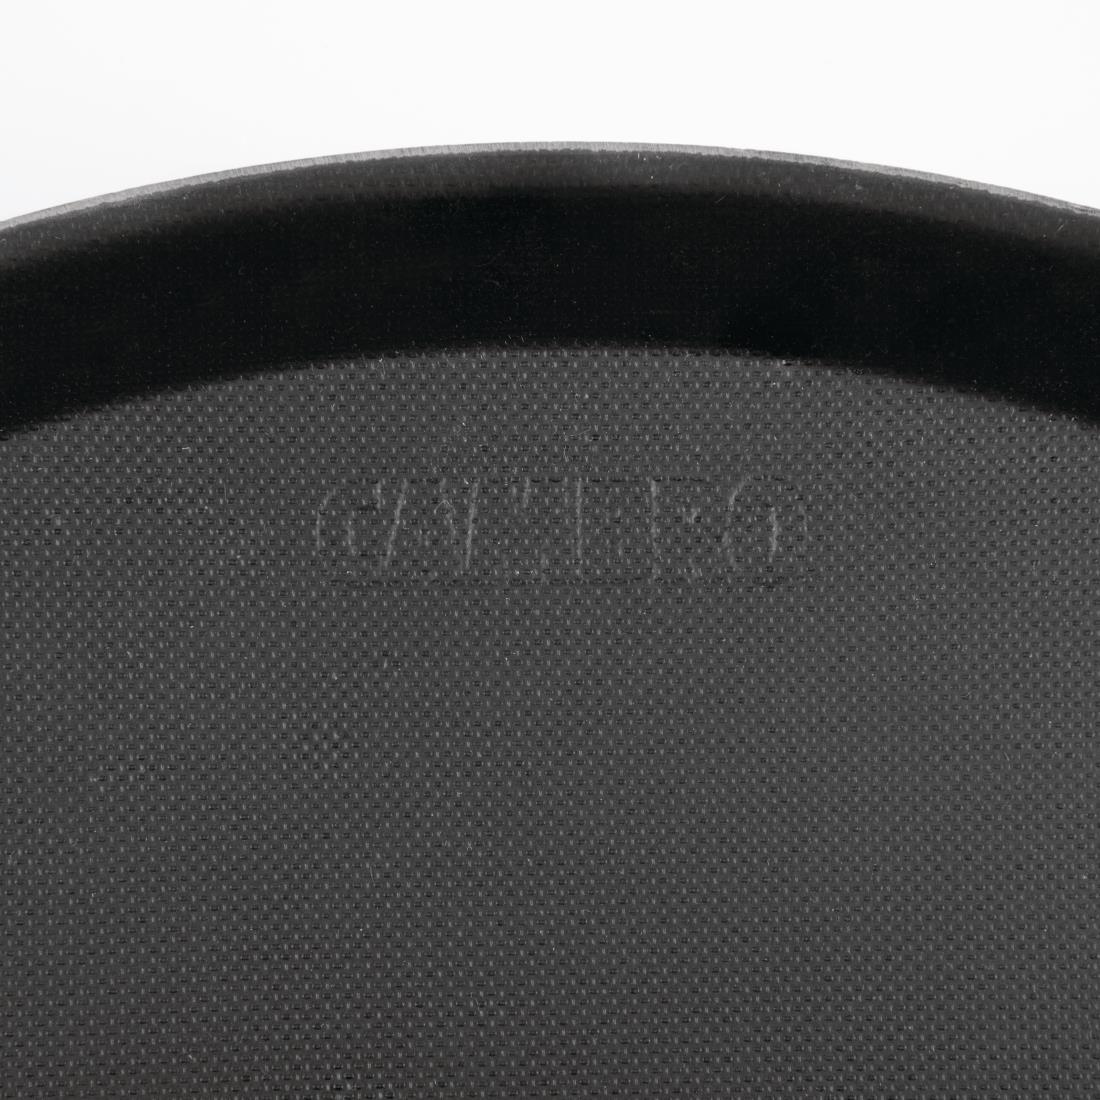 Cambro Camtread Fibreglass Round Non-Slip Tray Black 405mm - DM782  - 2